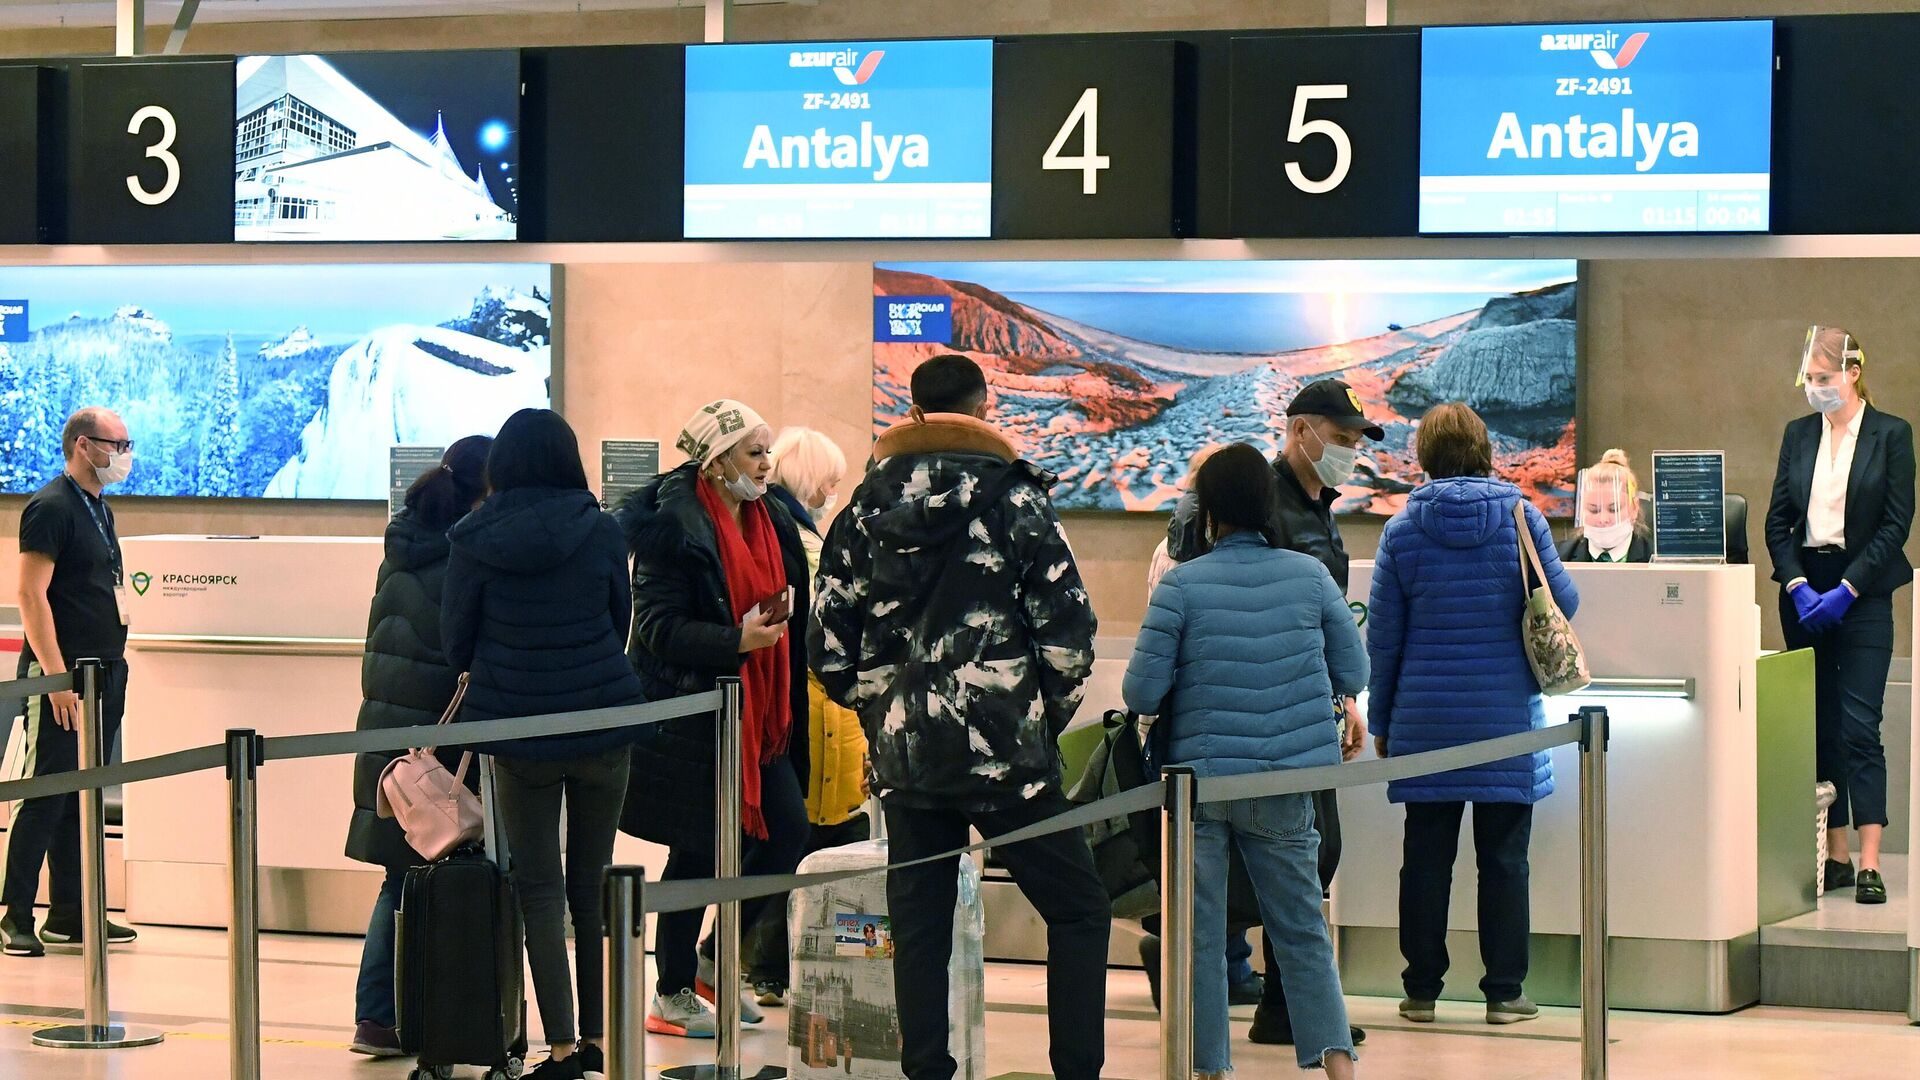 Пассажиры во время регистрации на международный рейс в турецкий город Анталья в аэропорту Красноярска - РИА Новости, 1920, 24.10.2020